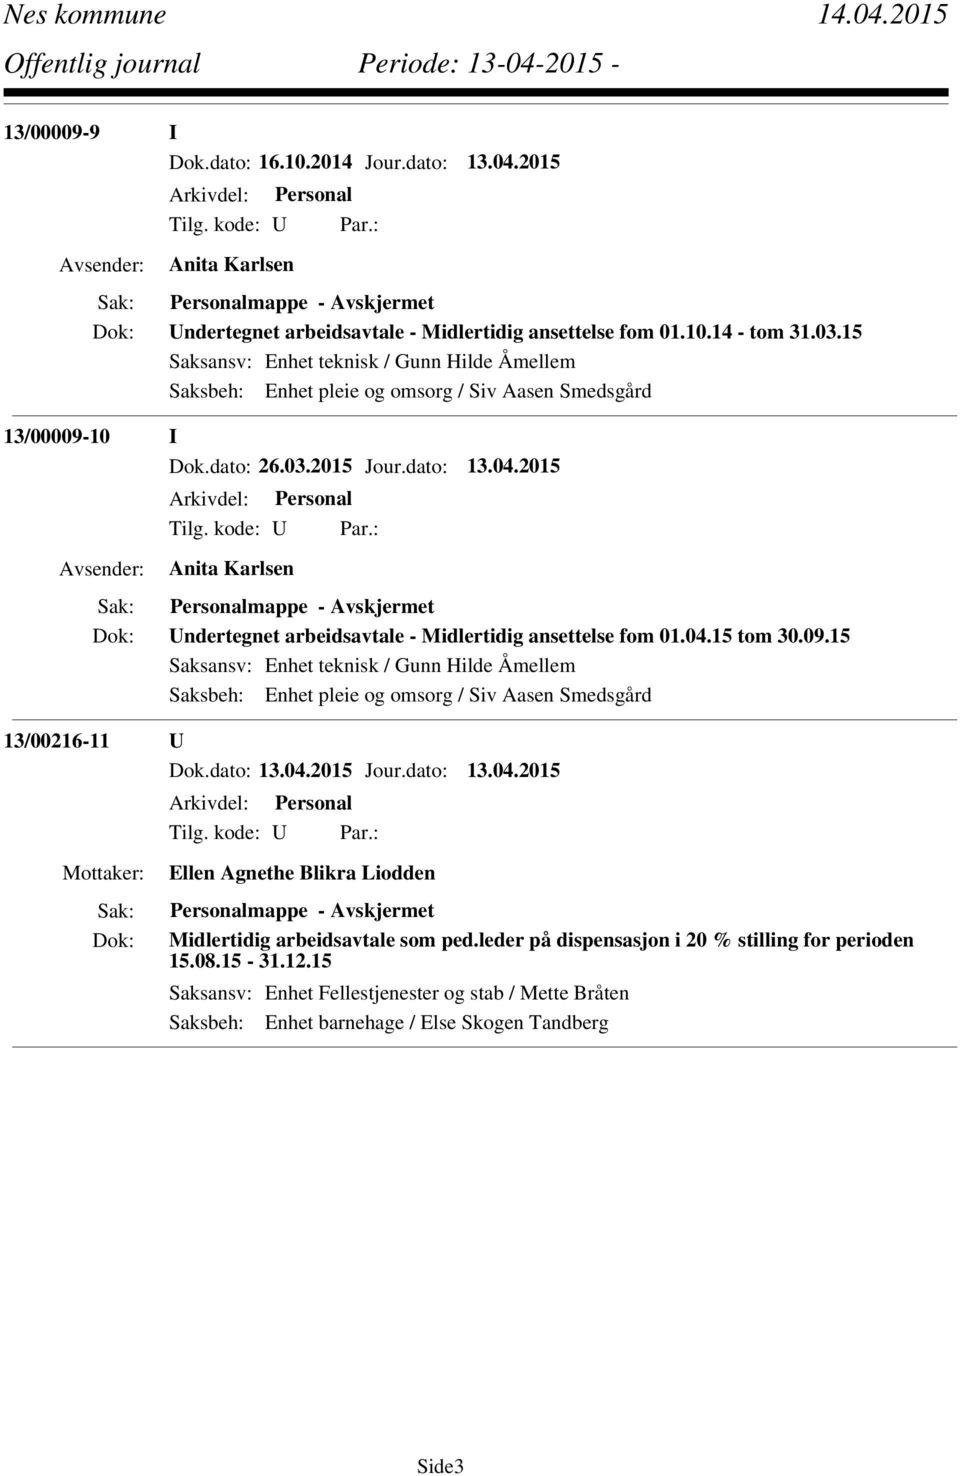 2015 Anita Karlsen Personalmappe - Undertegnet arbeidsavtale - Midlertidig ansettelse fom 01.04.15 tom 30.09.